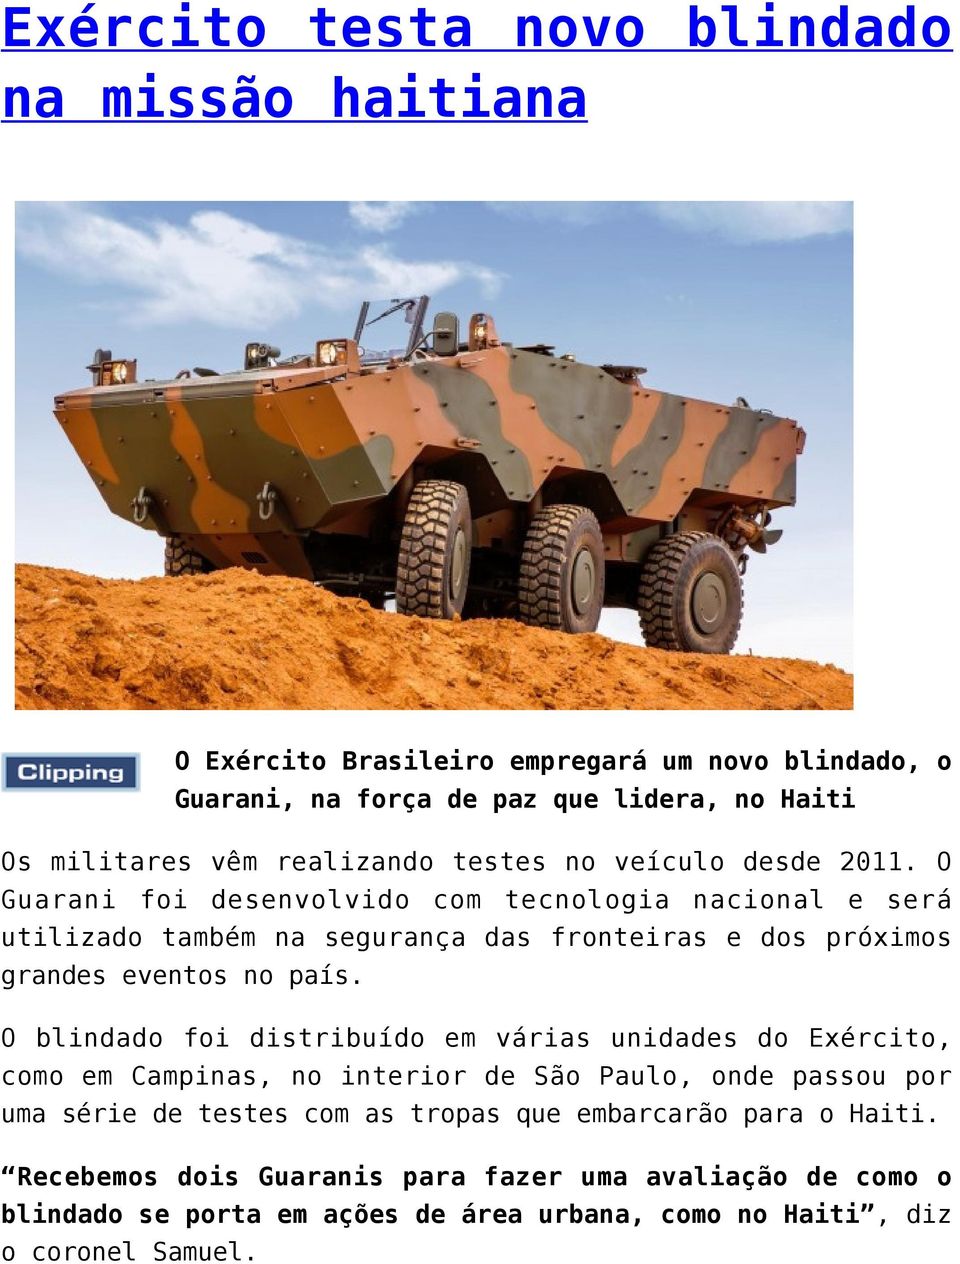 O Guarani foi desenvolvido com tecnologia nacional e será utilizado também na segurança das fronteiras e dos próximos grandes eventos no país.